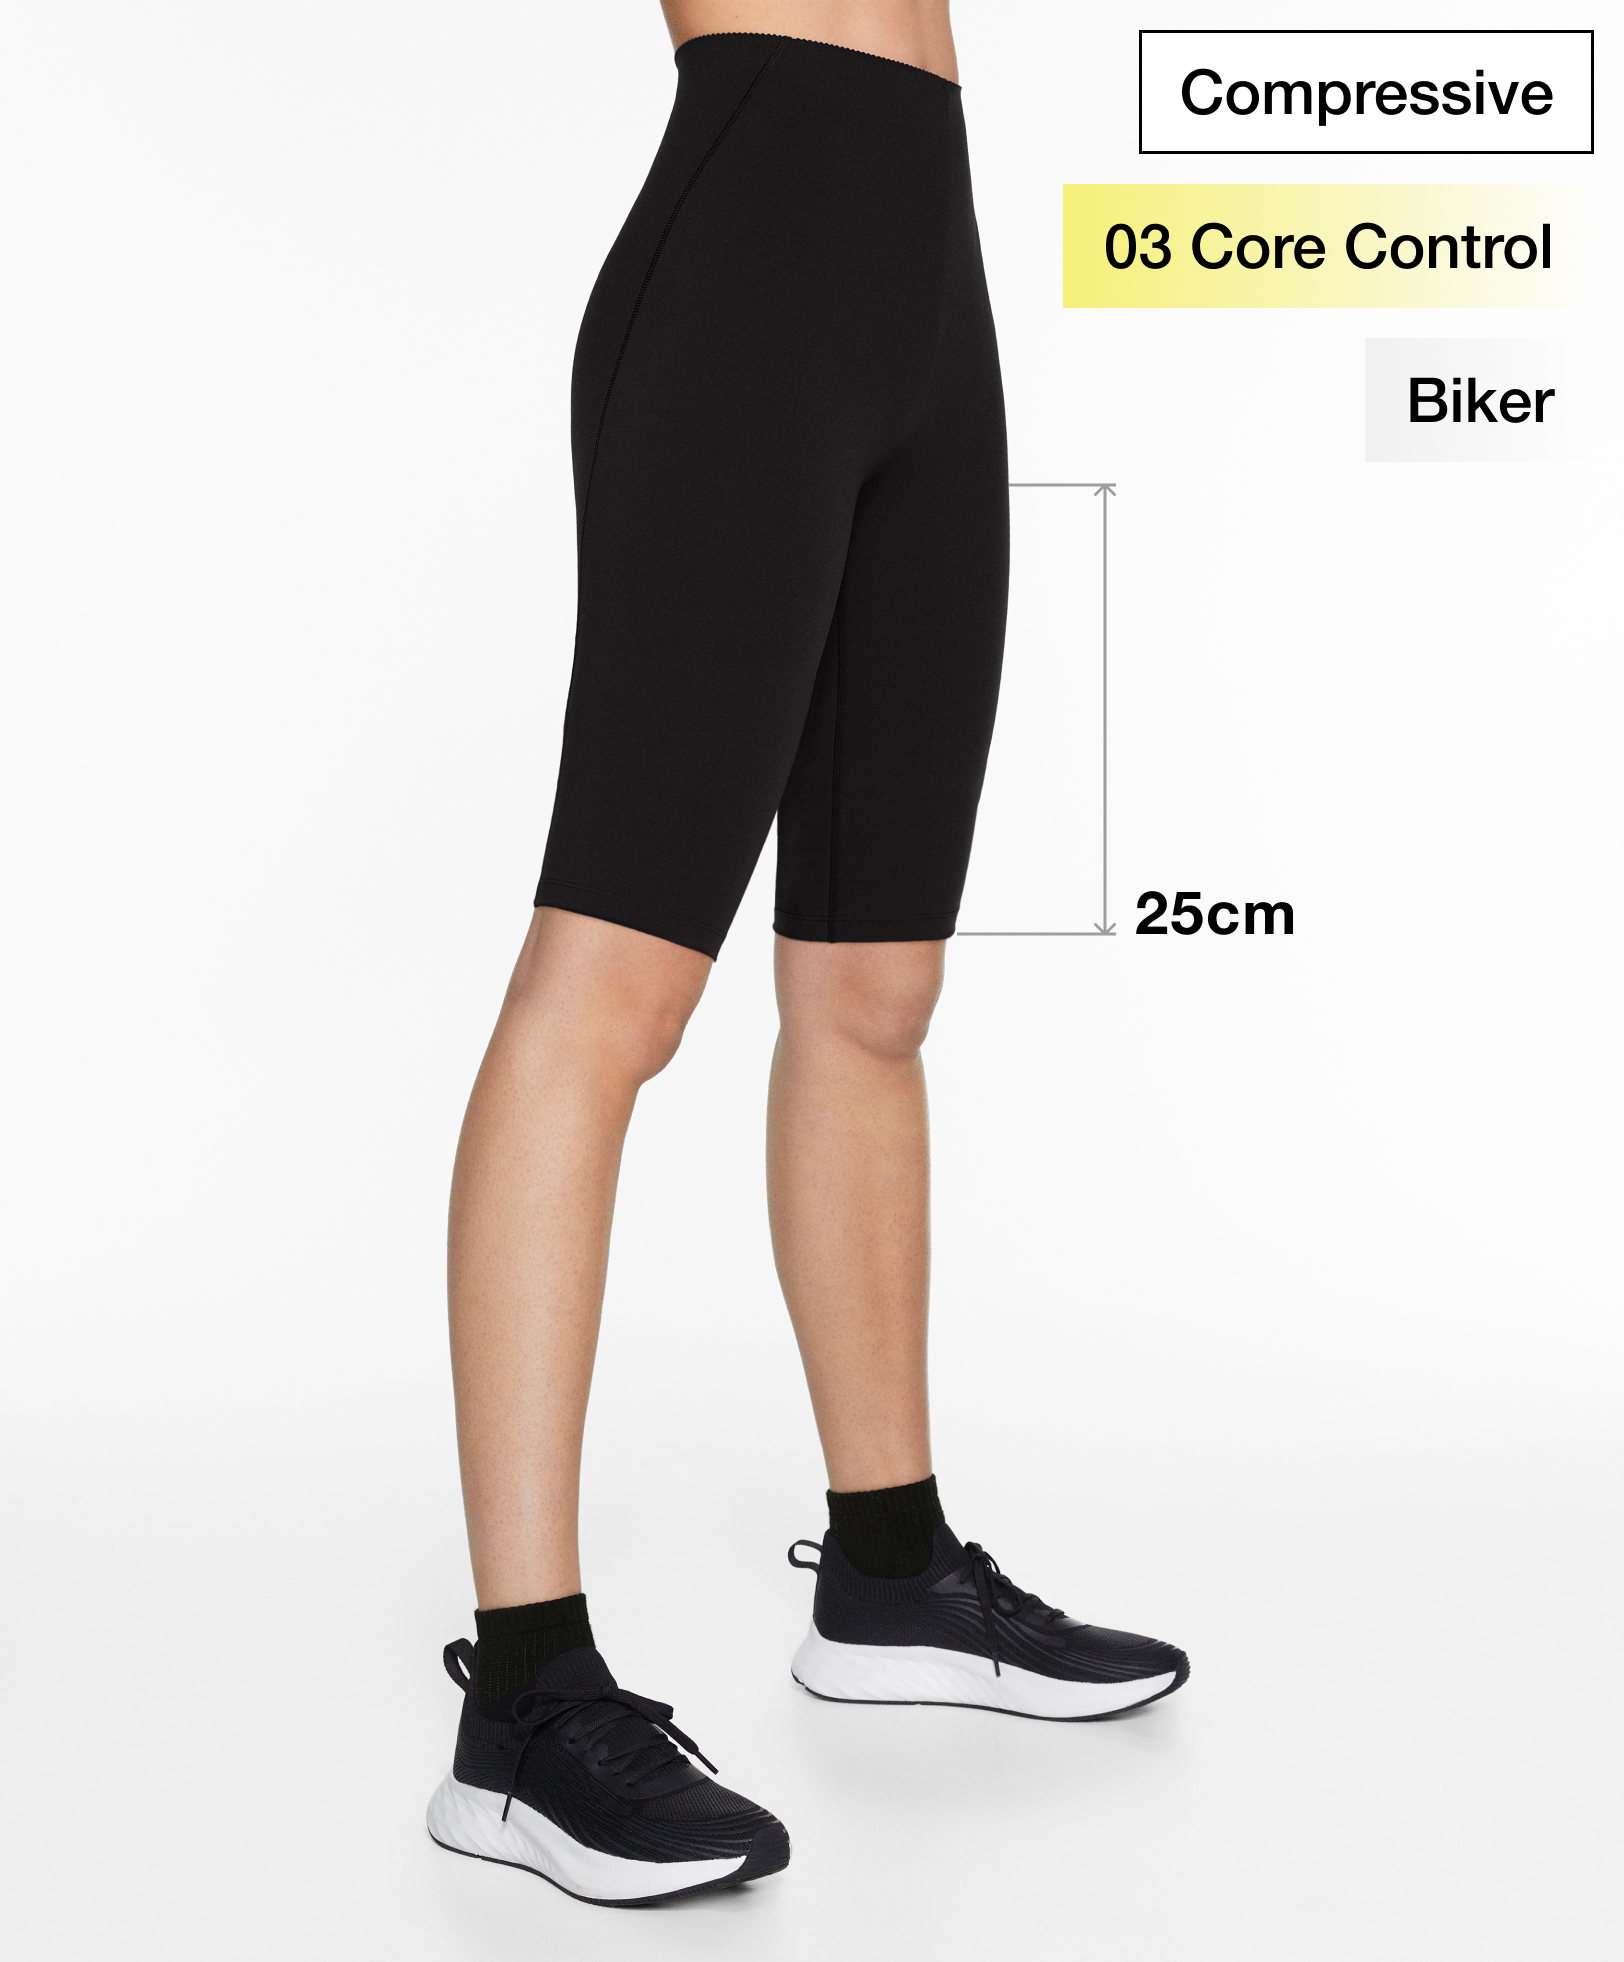 Leggings ciclista compressive core control 25 cm